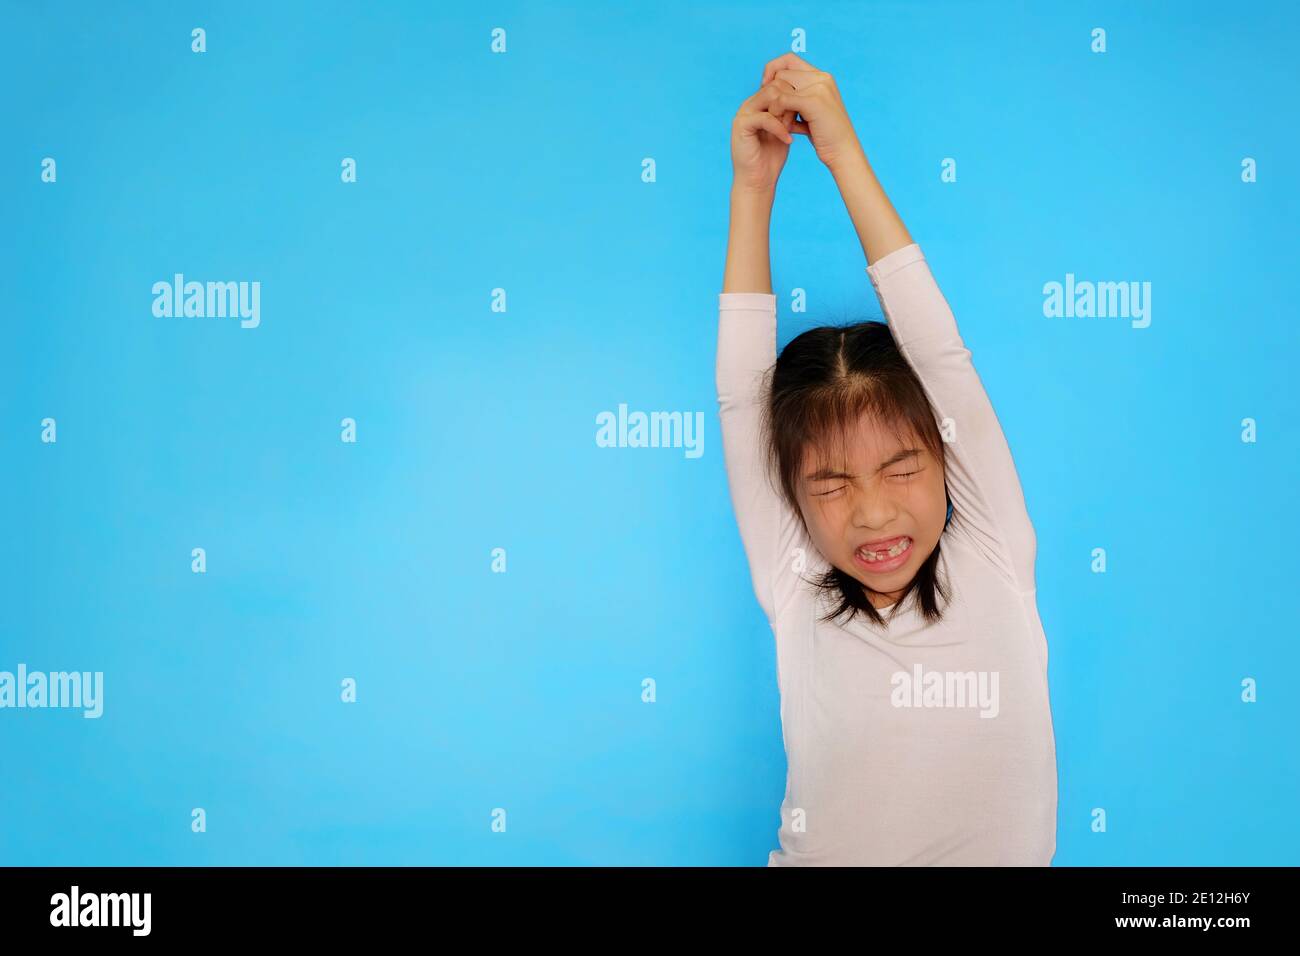 Ein süßes junges asiatisches Mädchen mit einem weißen Hemd dehnt sich mit ihren Armen nach oben und ihren Händen zusammen, bevor sie eine Übung beginnt. Einfarbiges hellblaues Backgro Stockfoto